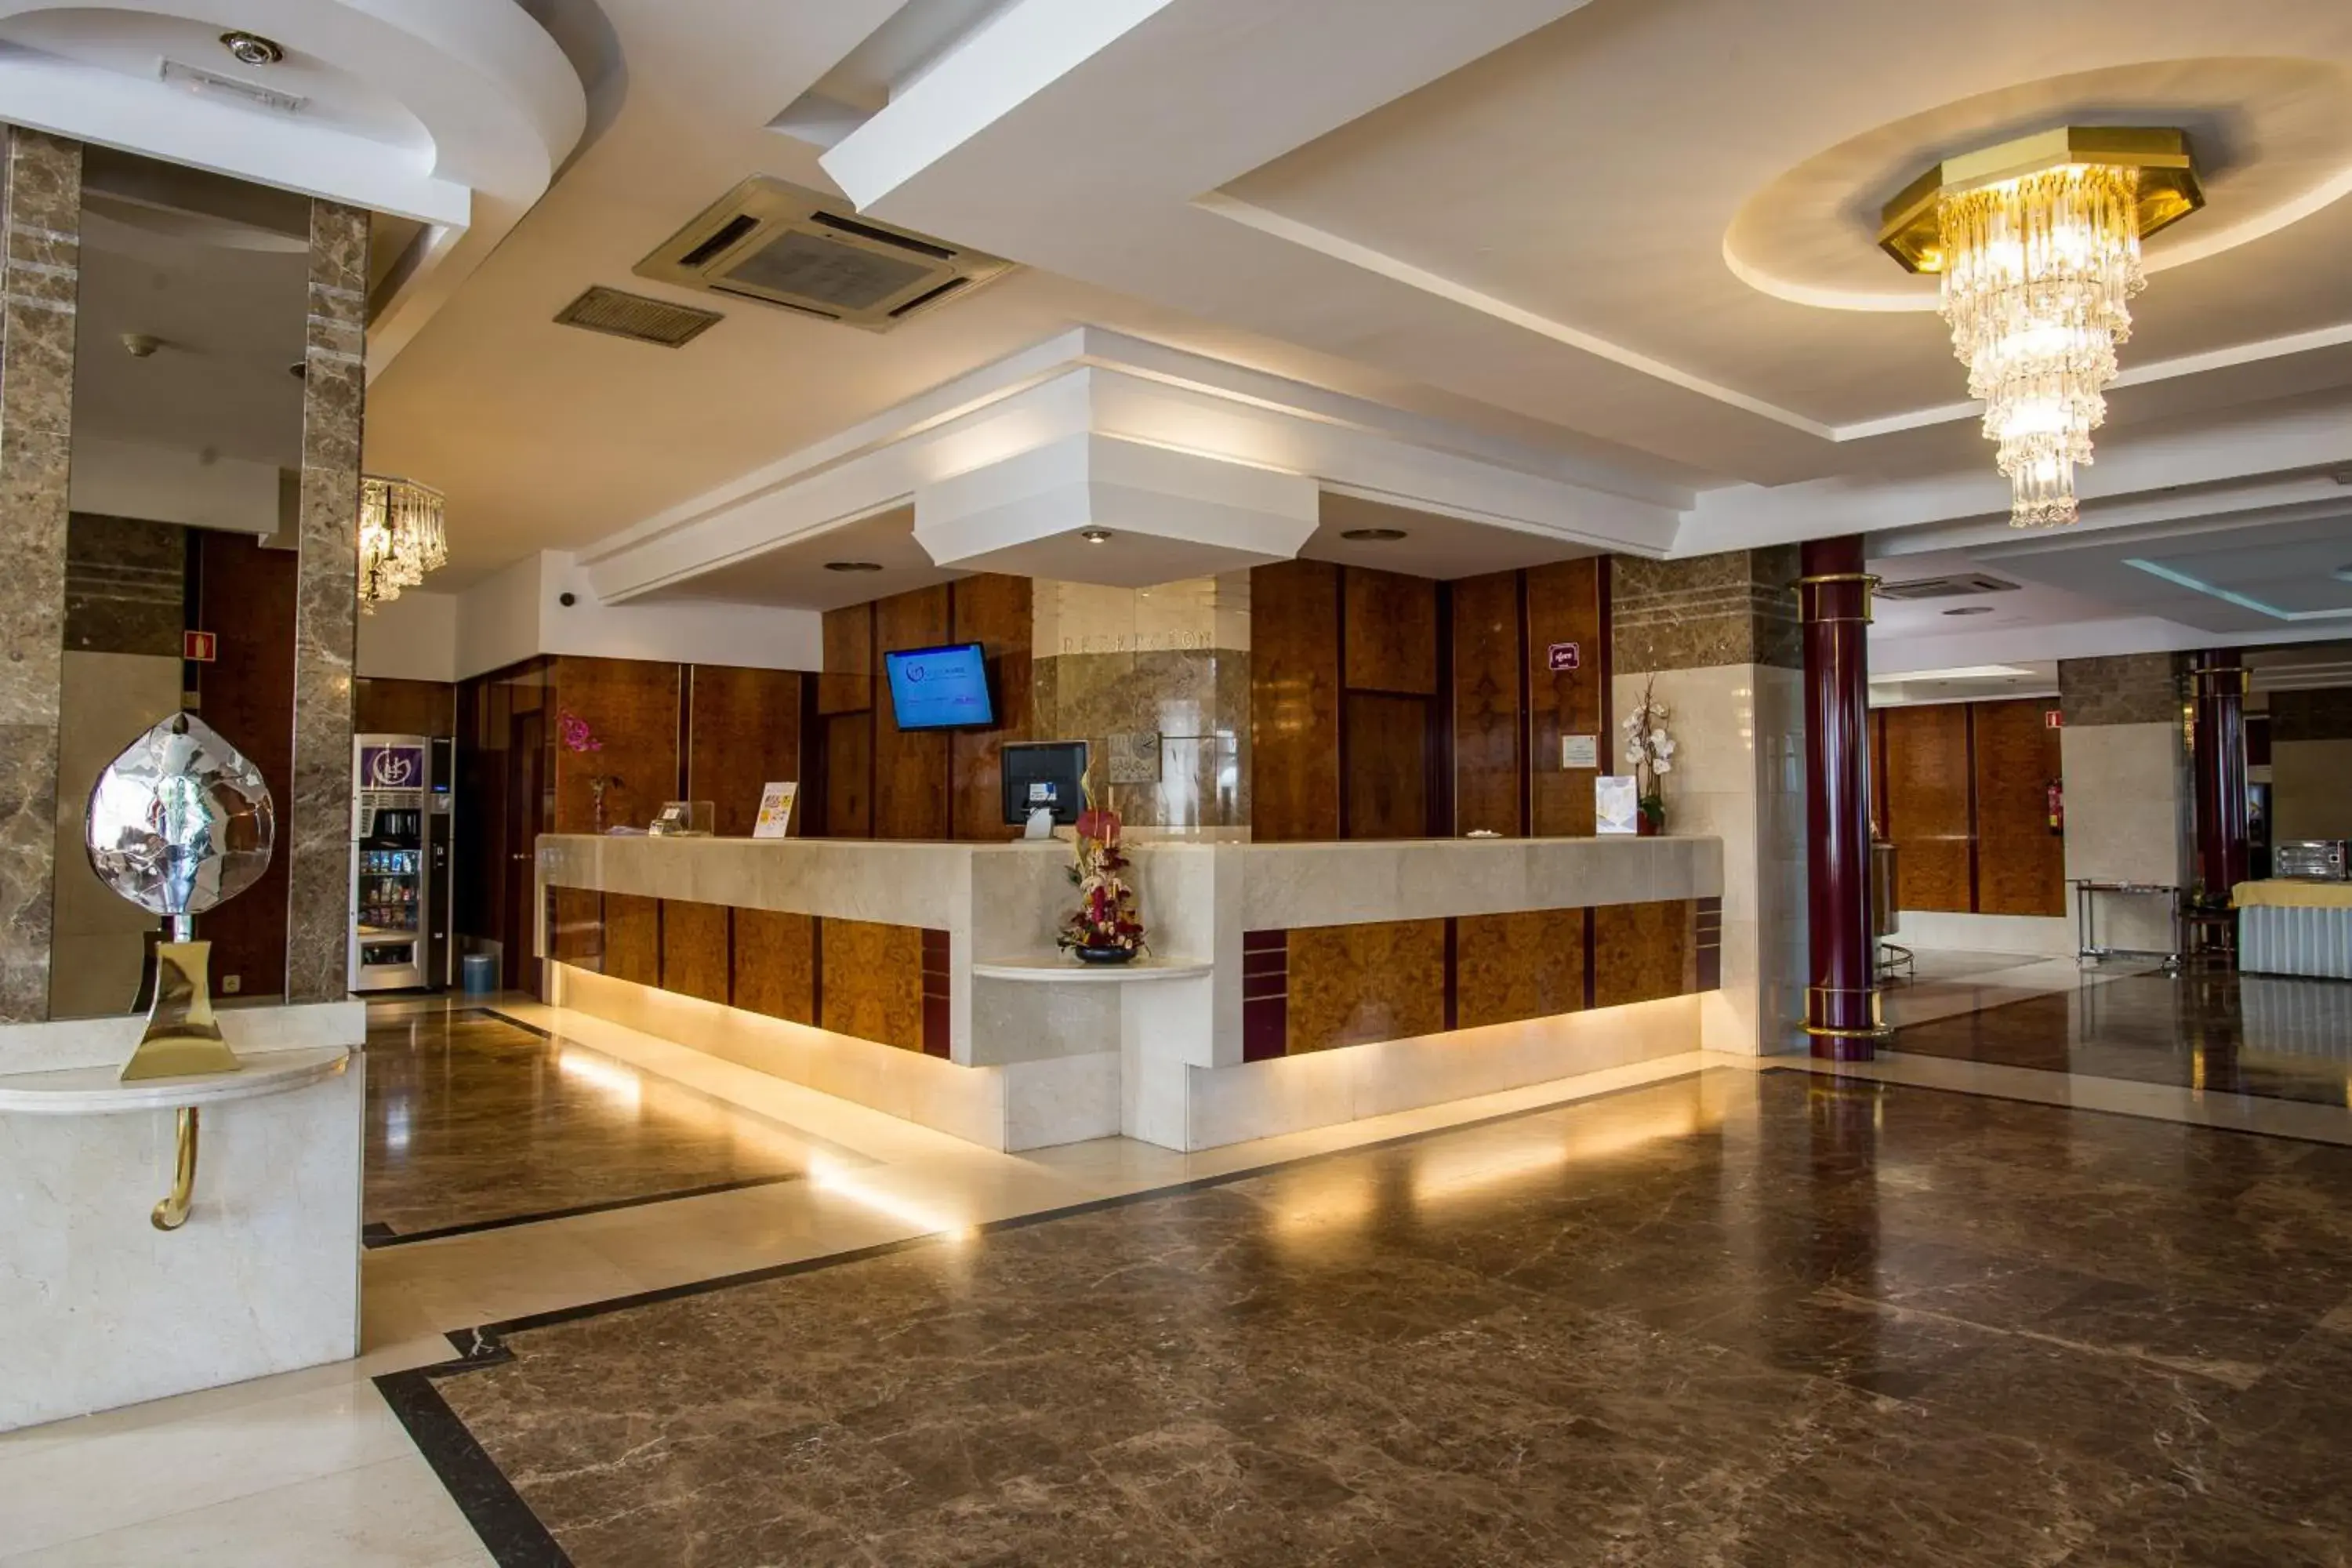 Lobby or reception in Hotel Aida